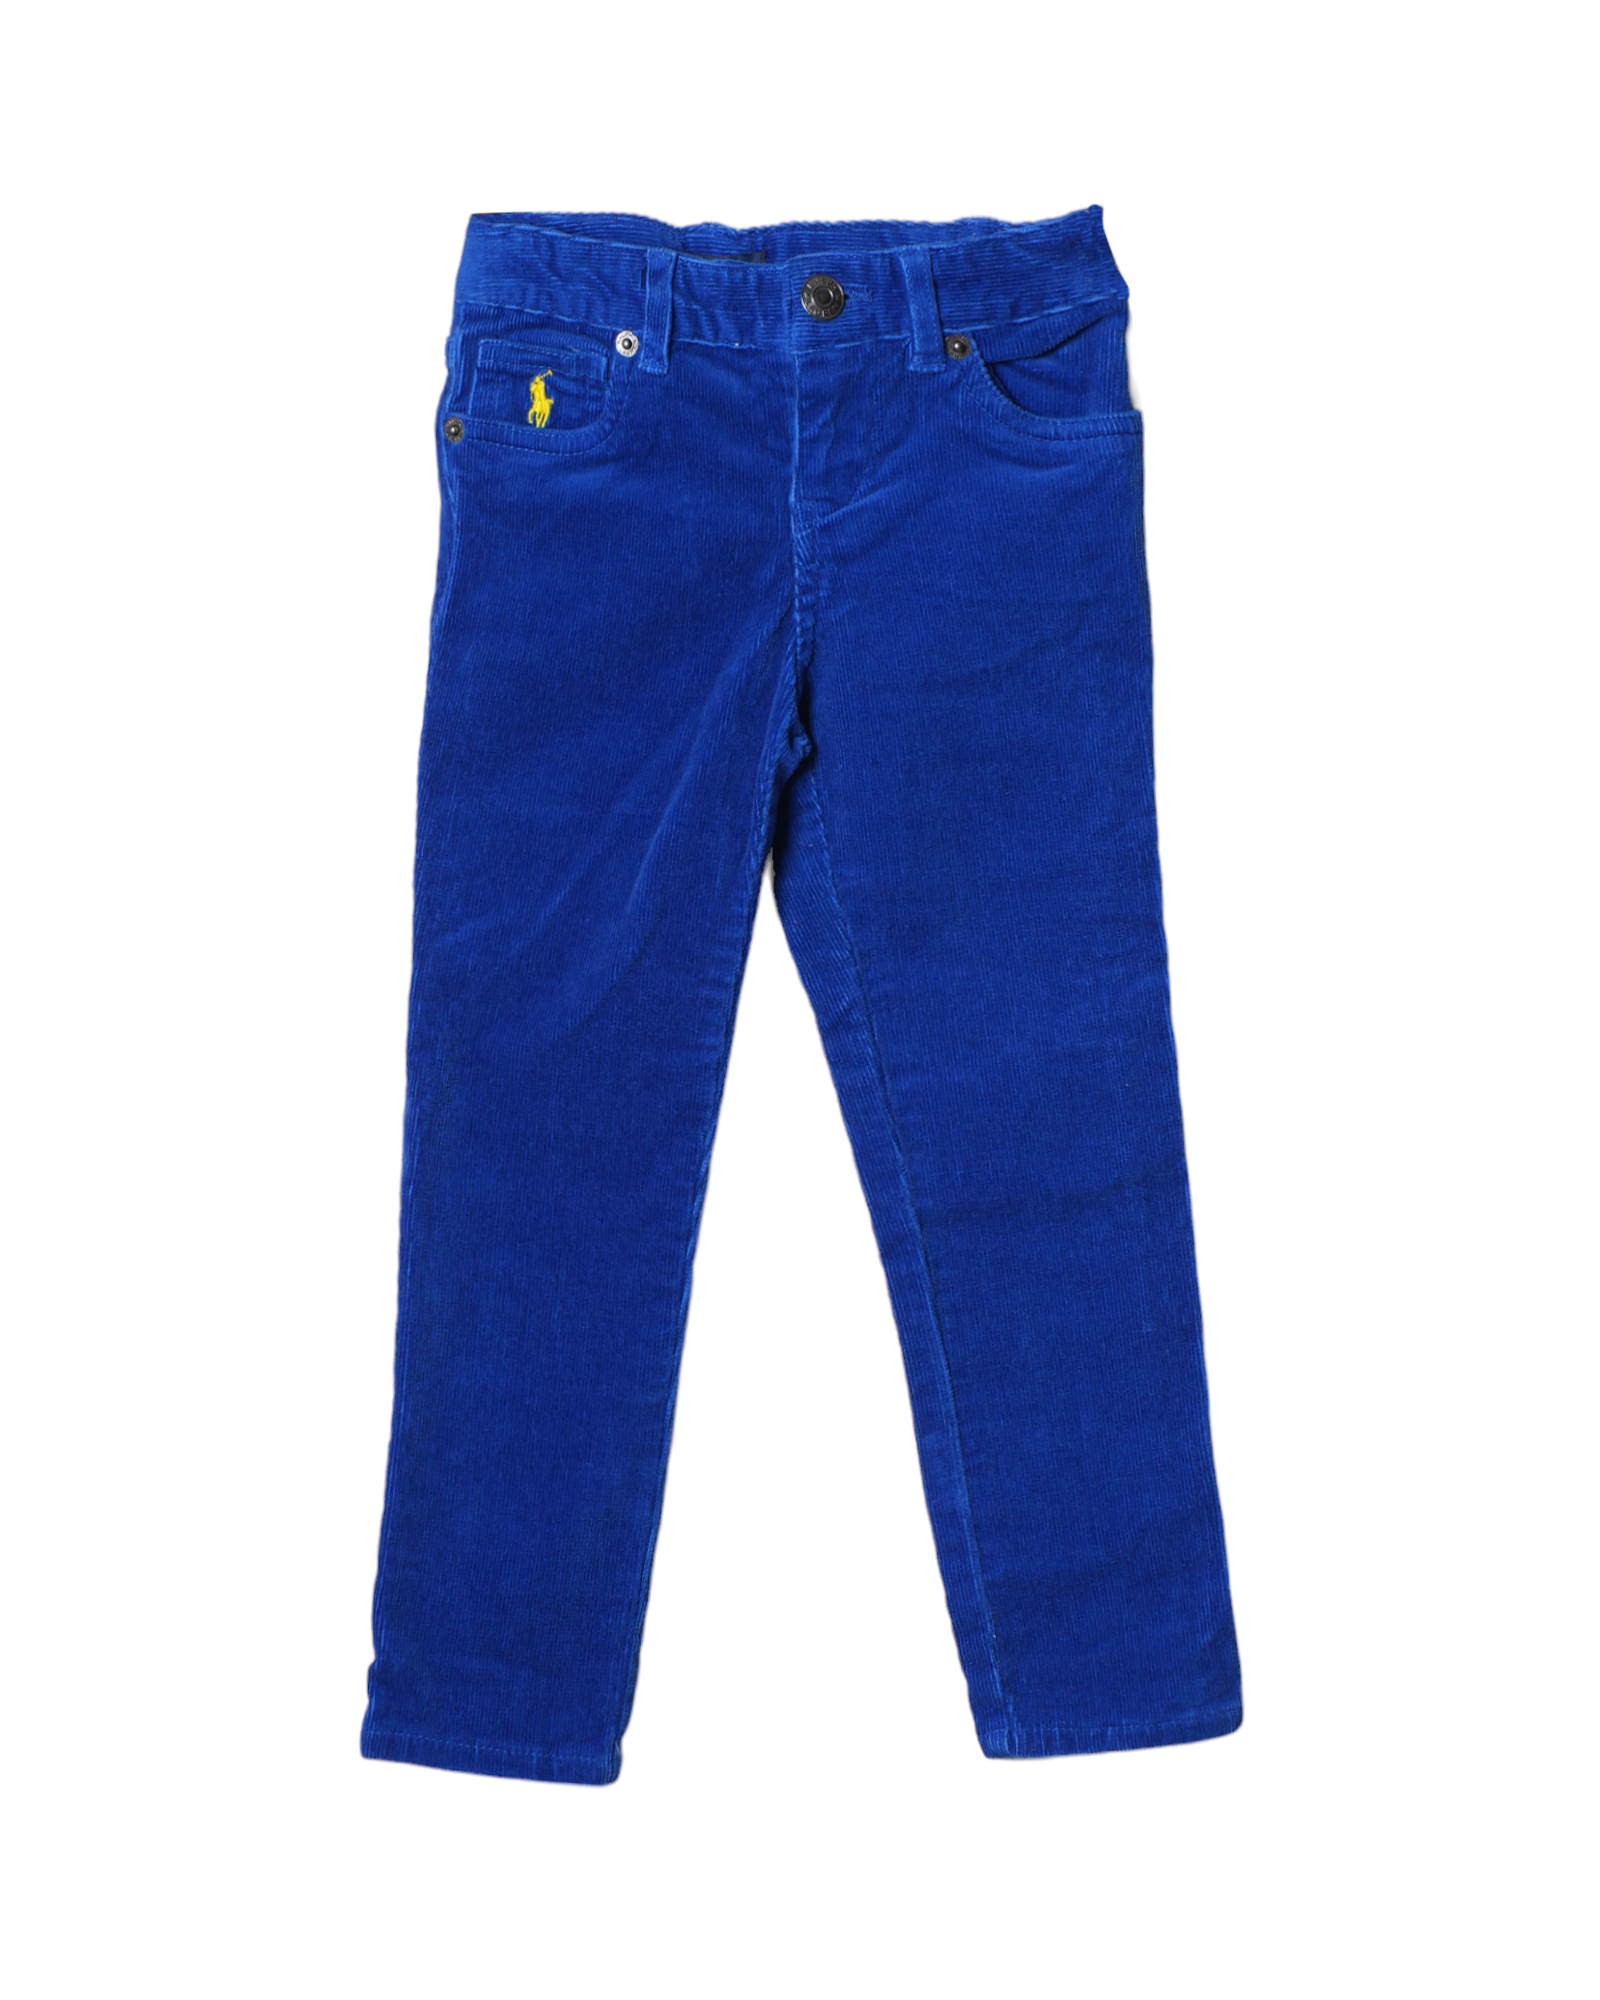 New Ralph Lauren Blue Corduroy Pants